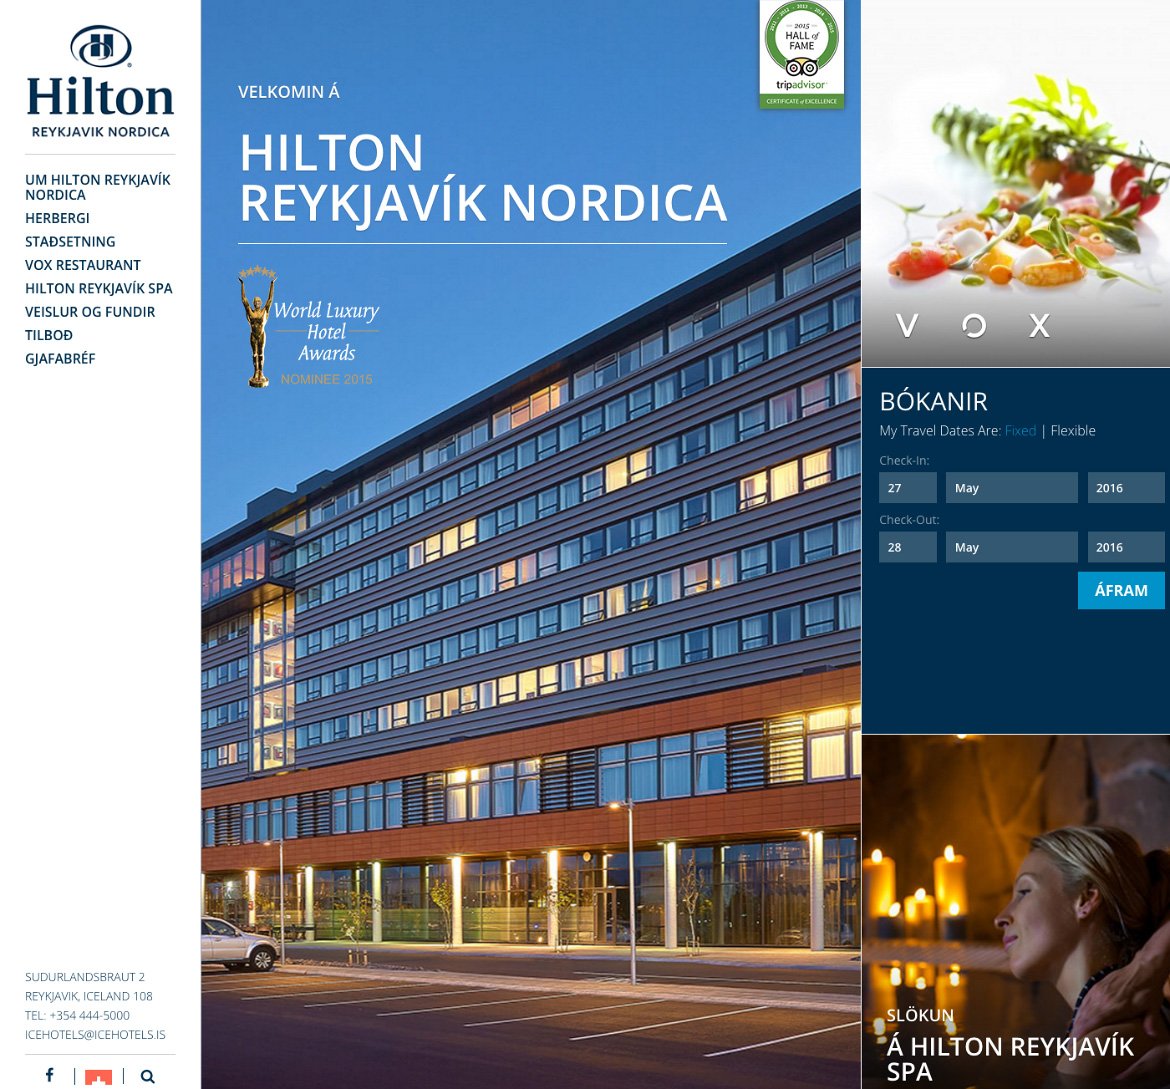 hilton-reykjavik-nordica-central-reykjavik-hotel.jpg